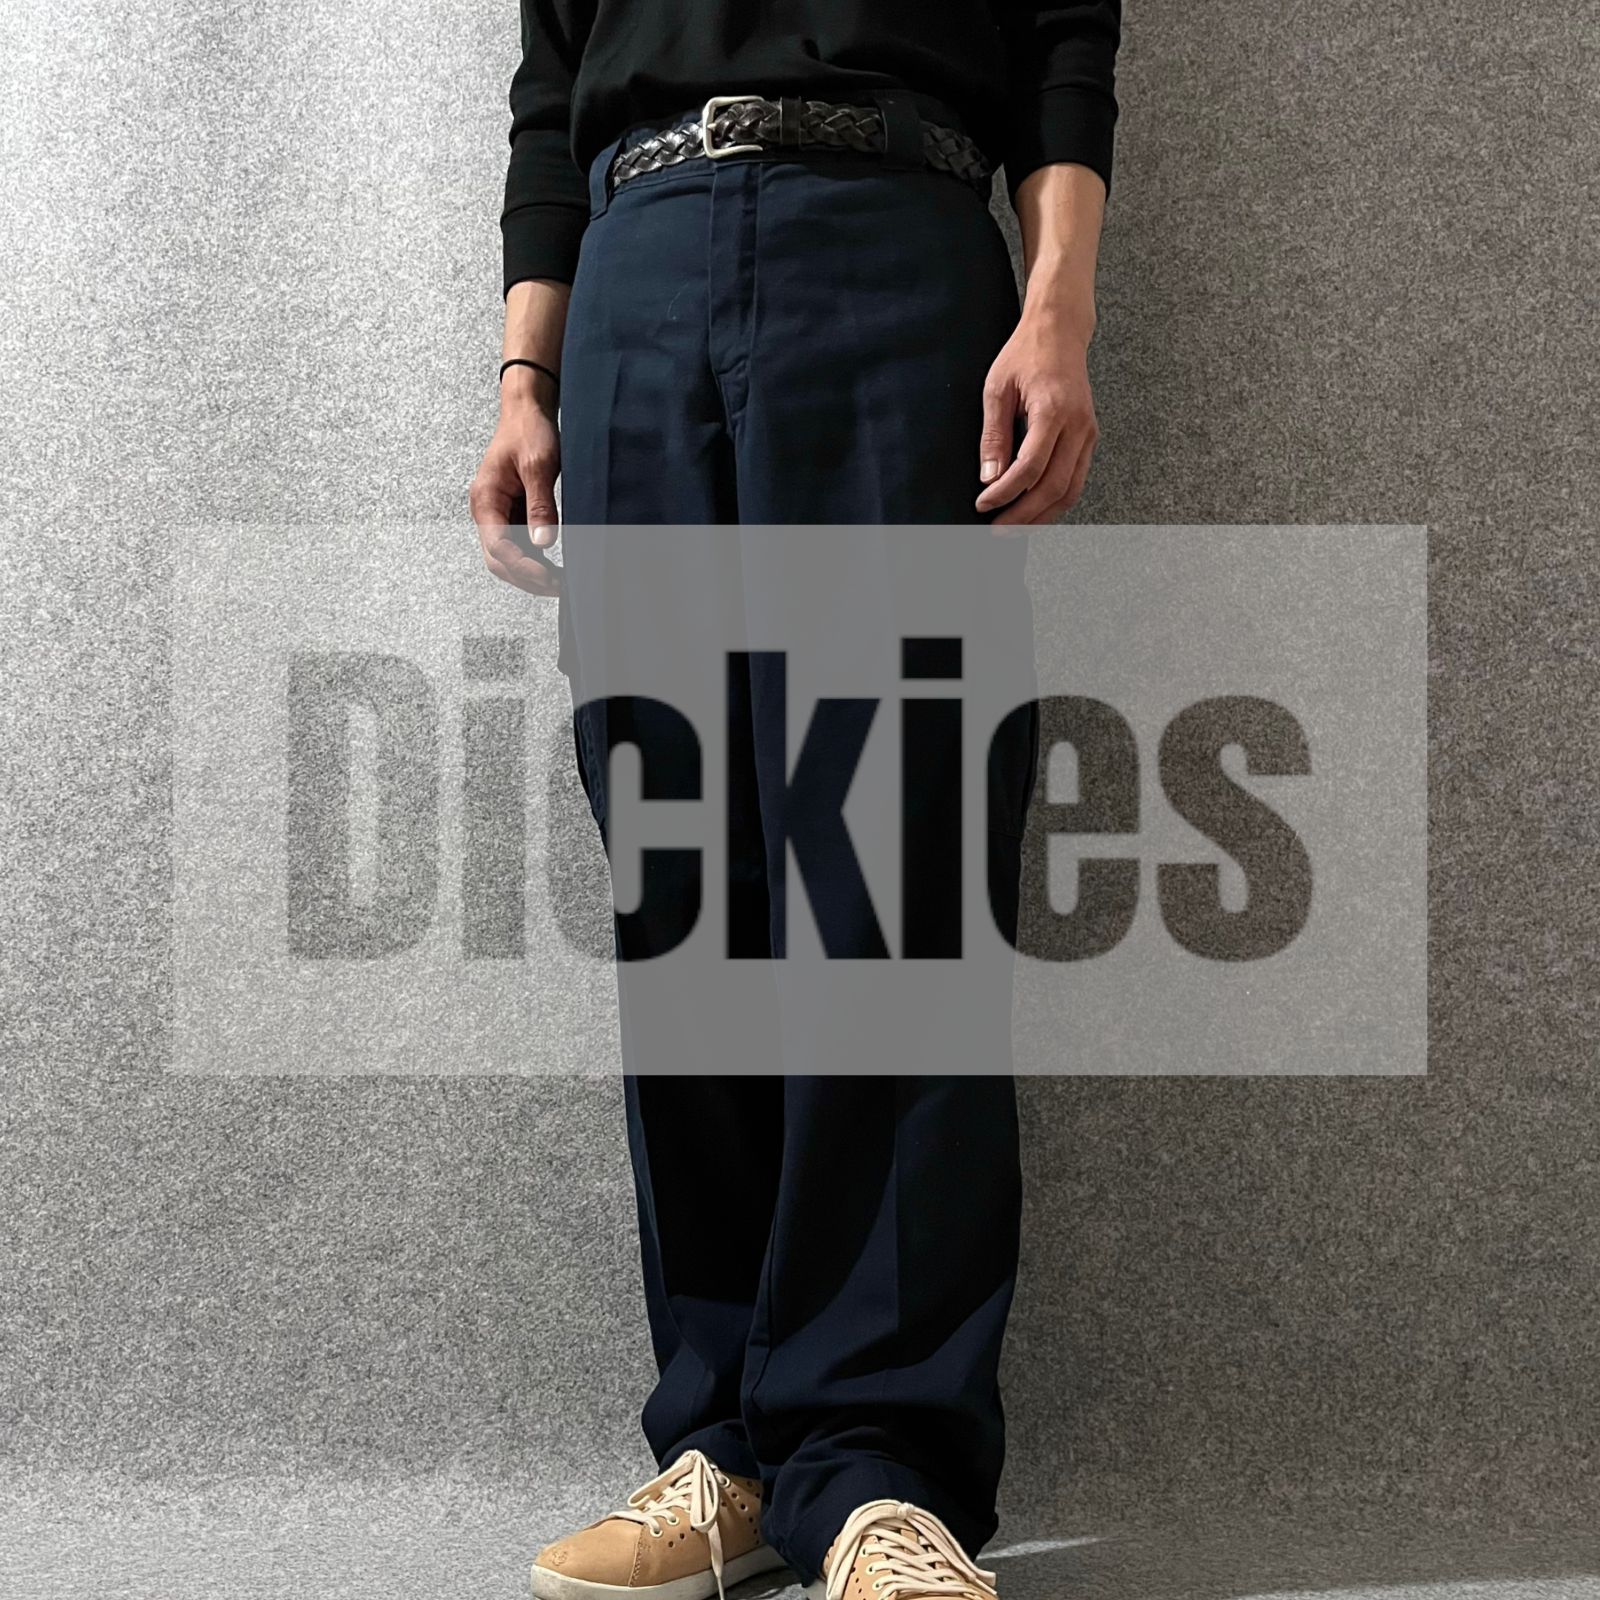 【DICKIES】90s ワイド ルーズ ワークパンツ カーゴパンツ 紺 W36